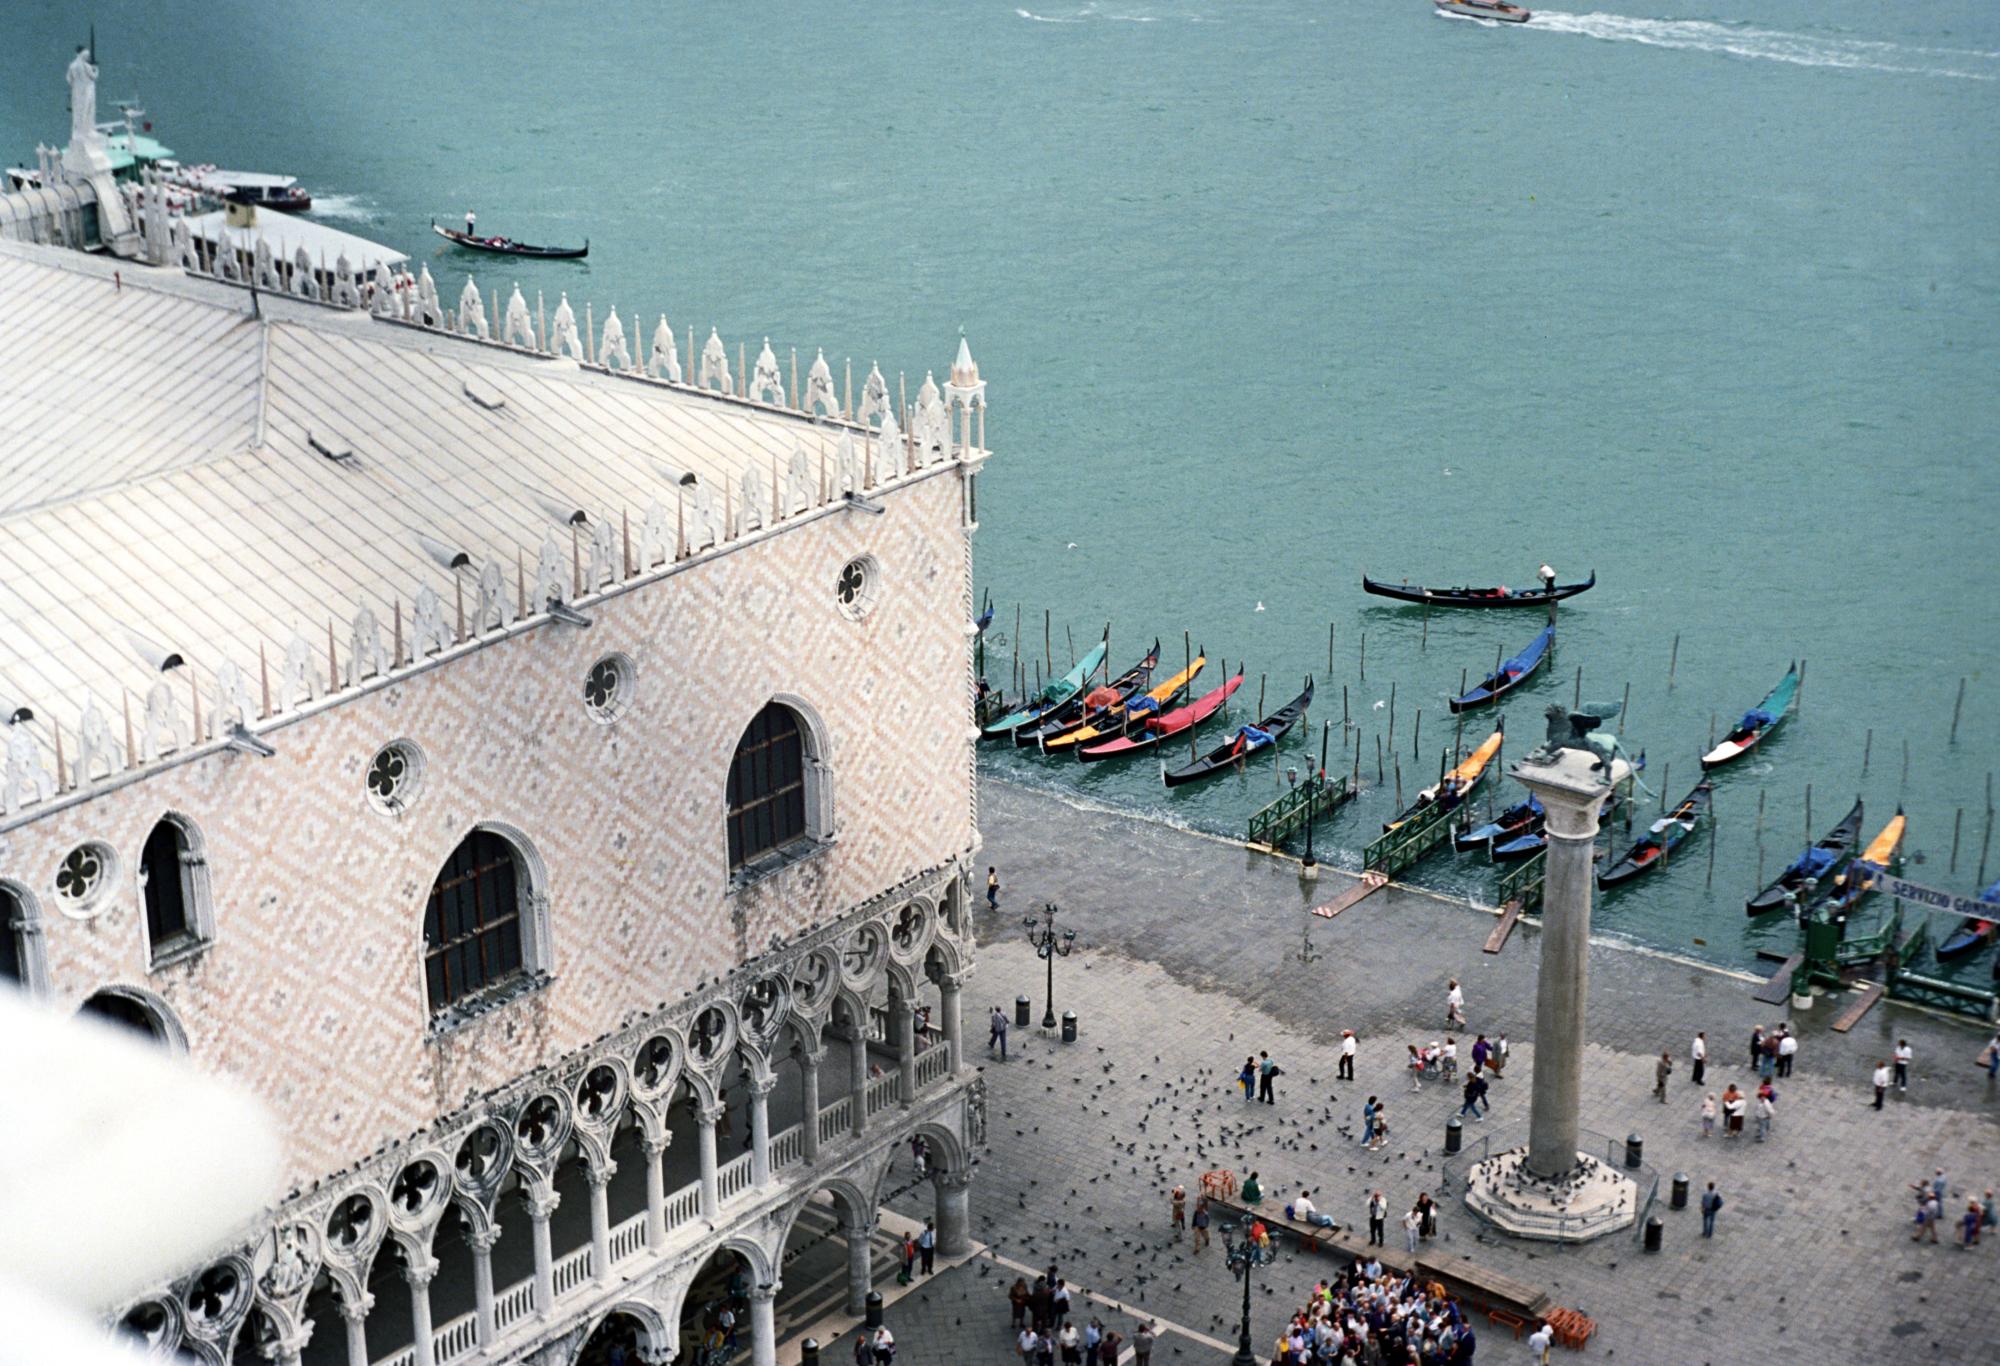 Italy (Ana) - Venice #20